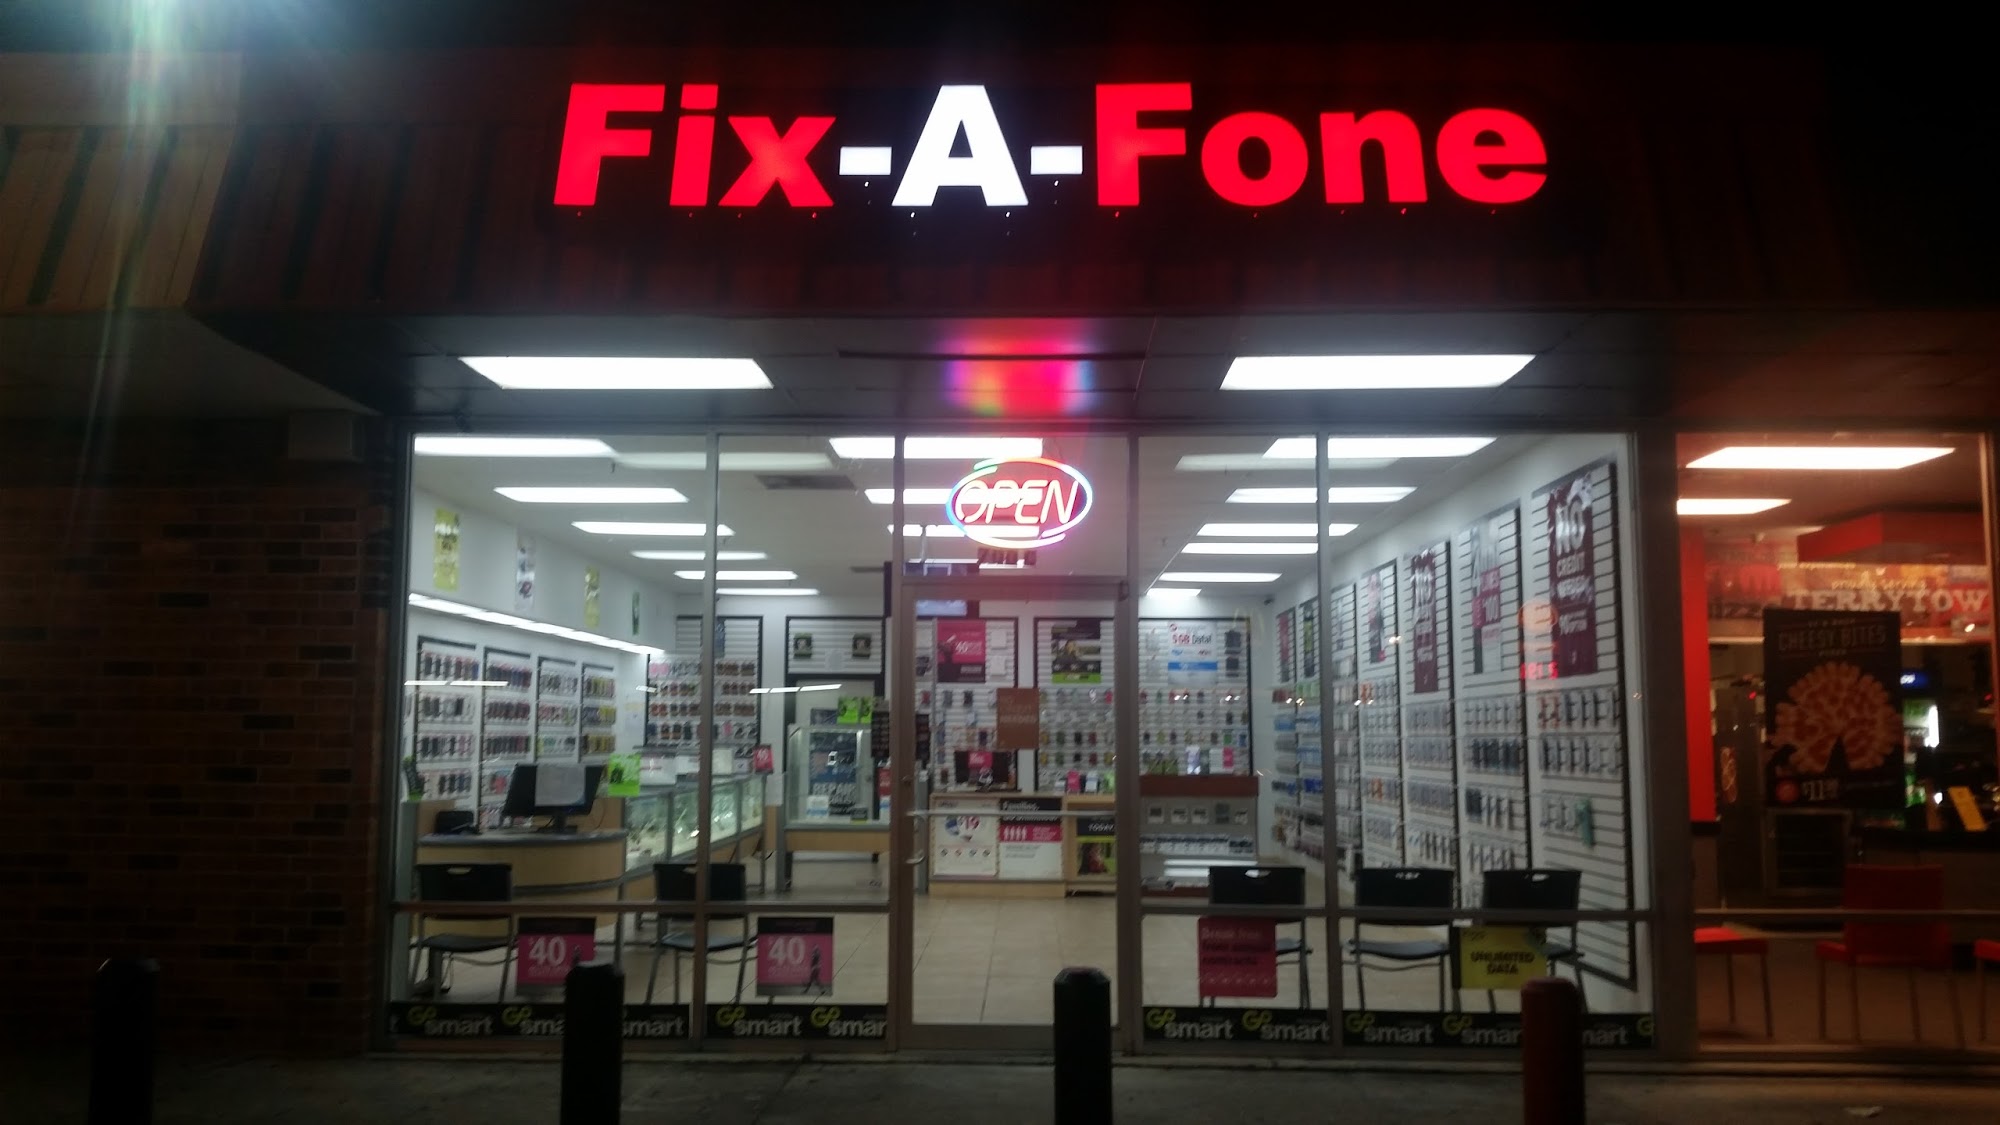 Fix-A-Fone